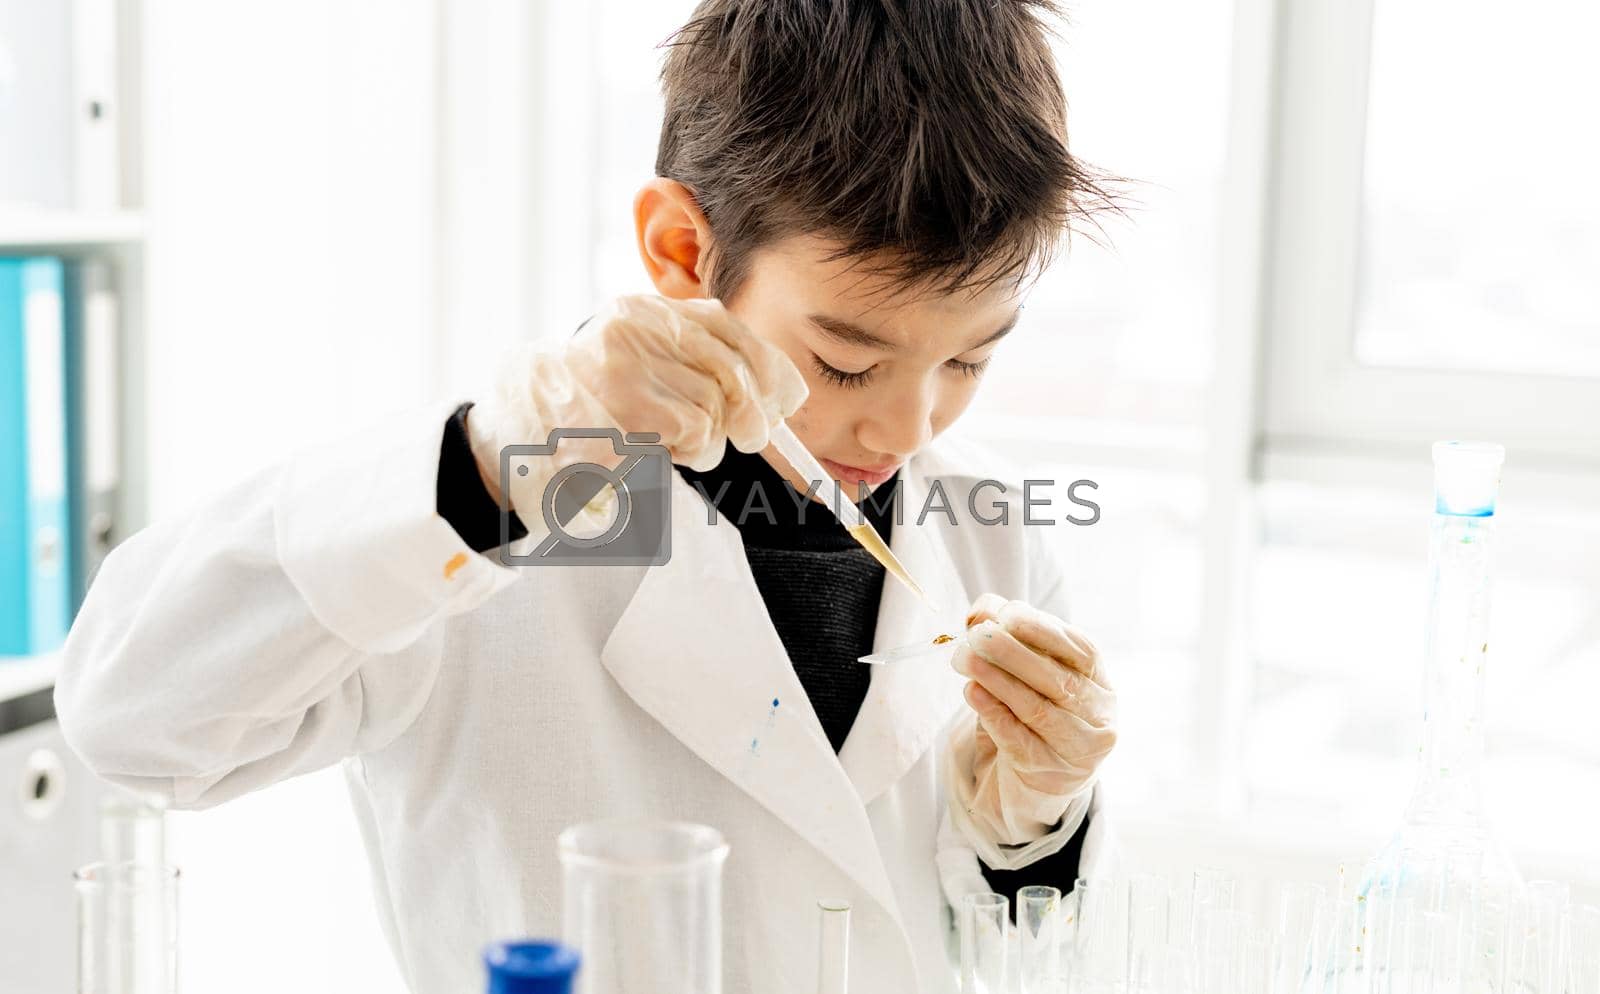 Royalty free image of School boy in chemistry class by tan4ikk1